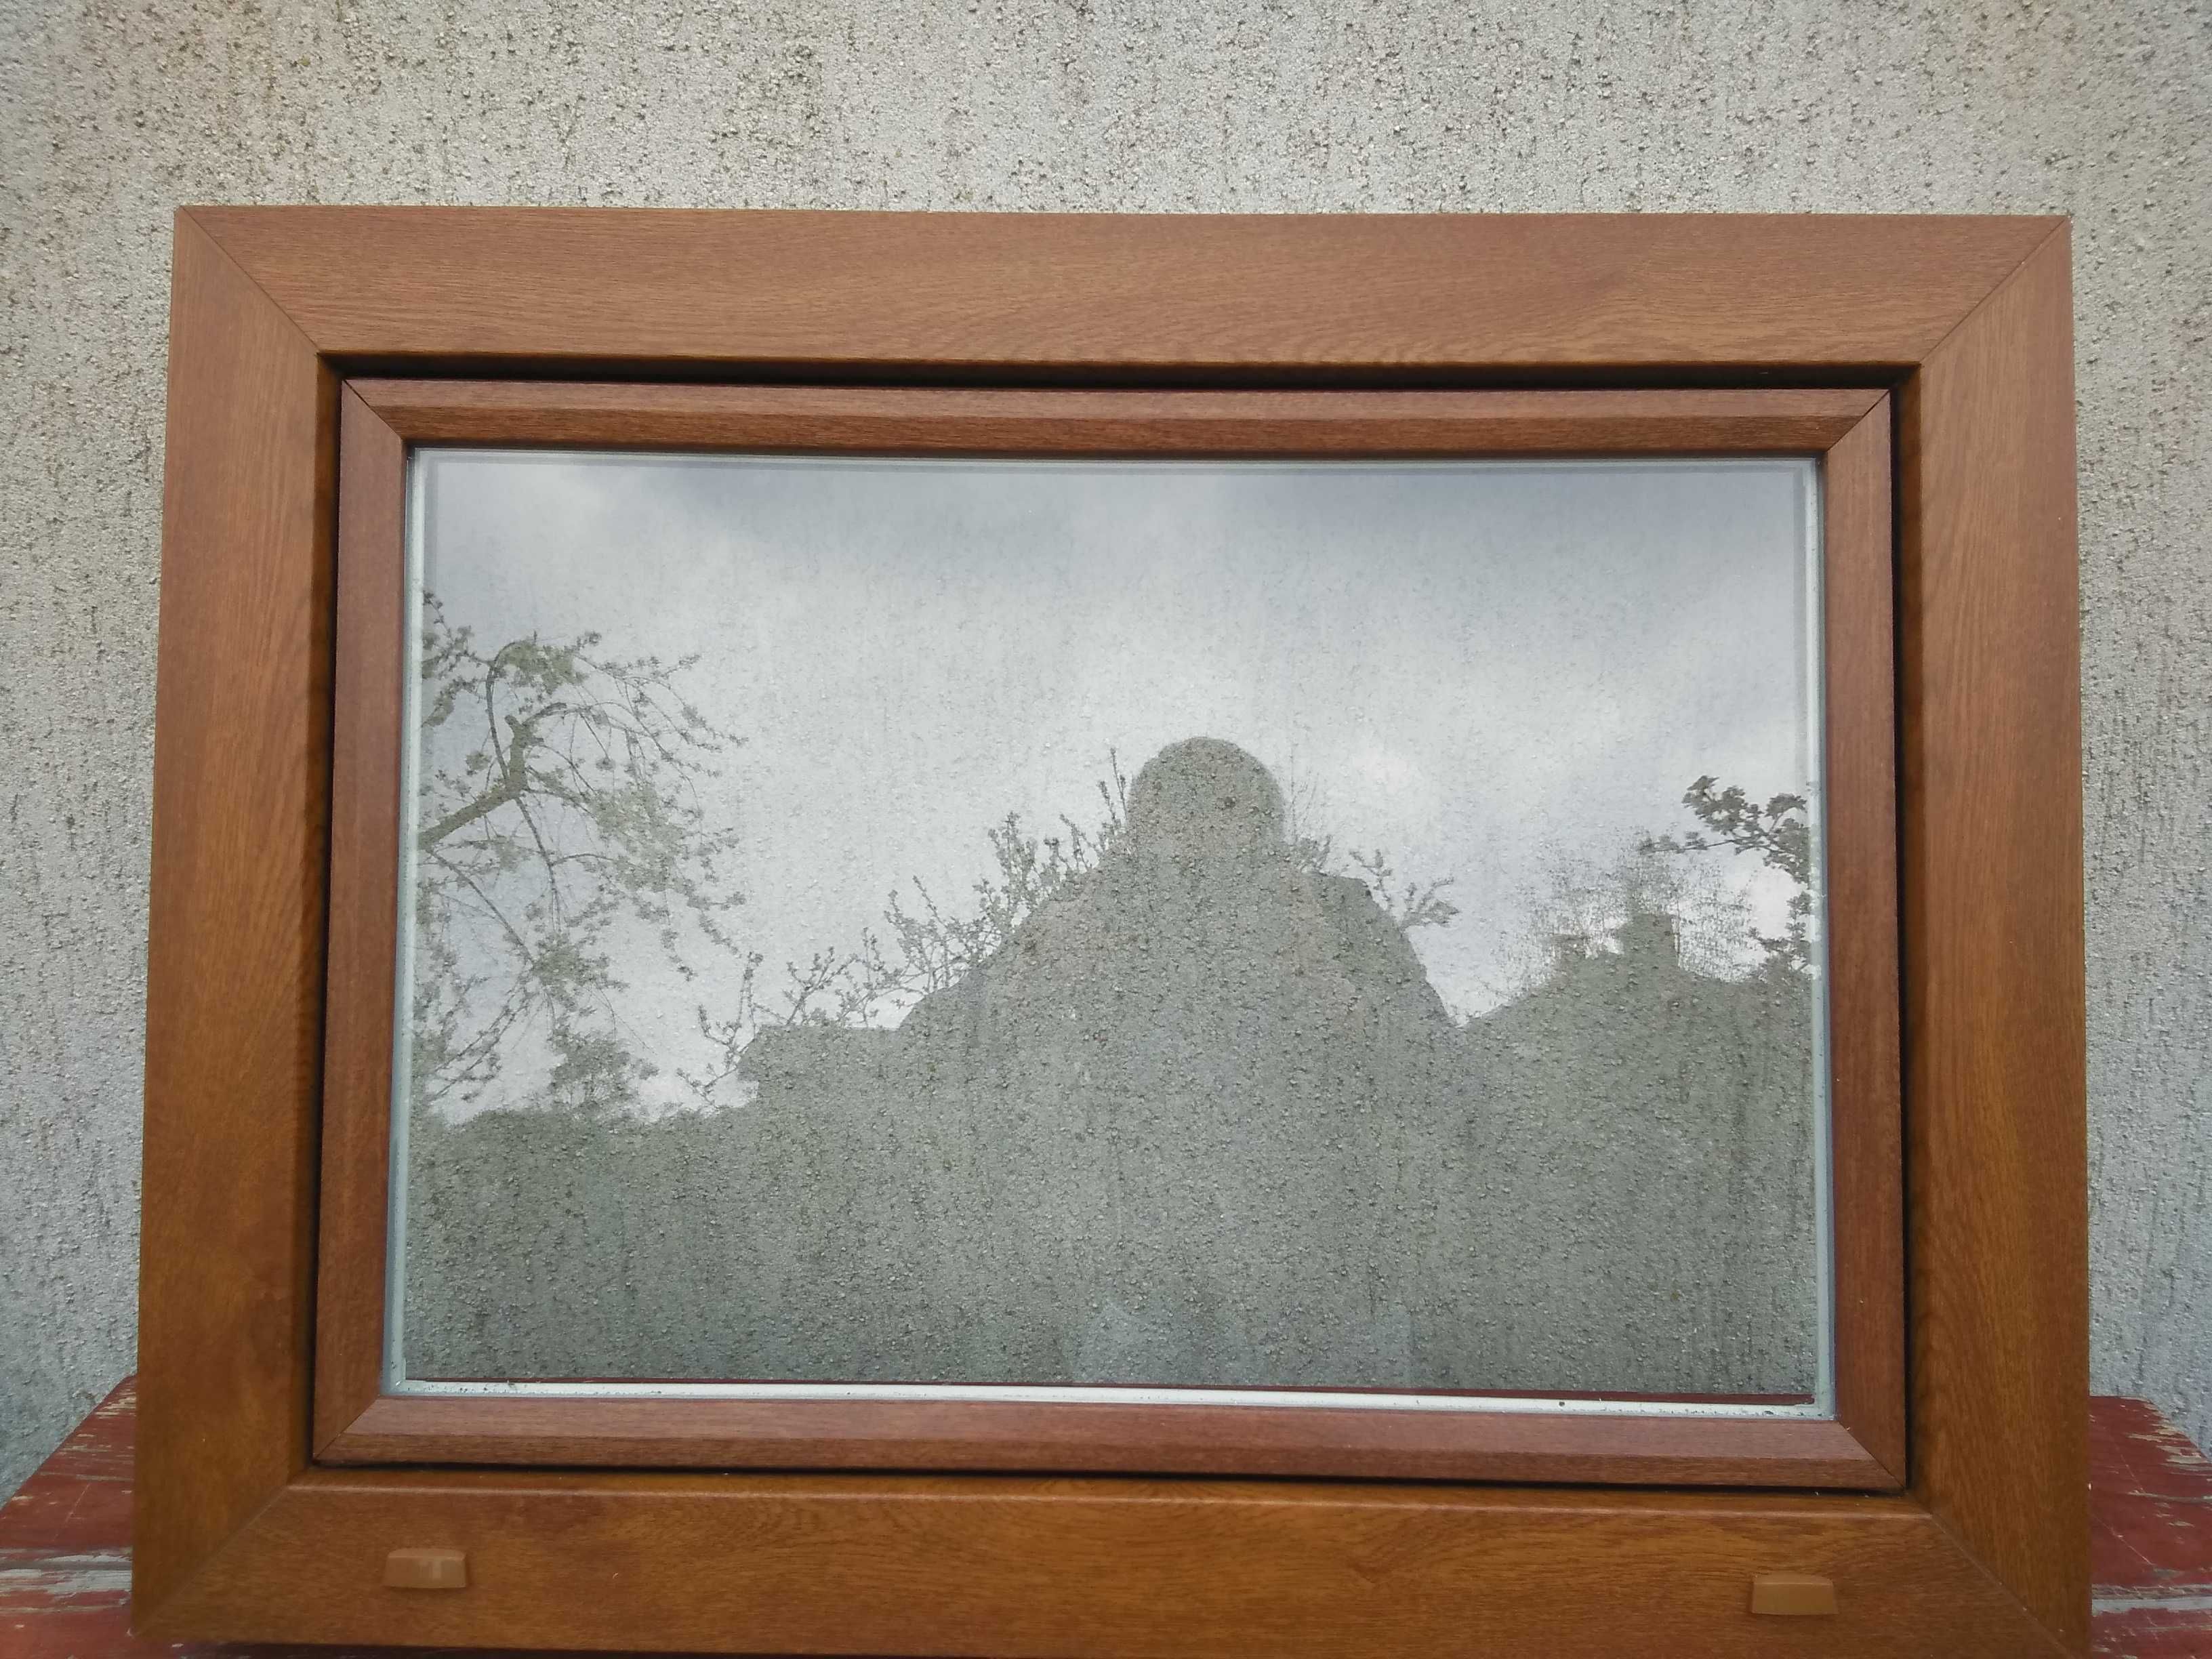 Okno Gospodarcze 120x80 Czekolada okna Inwentarskie Producent WYSYŁKA